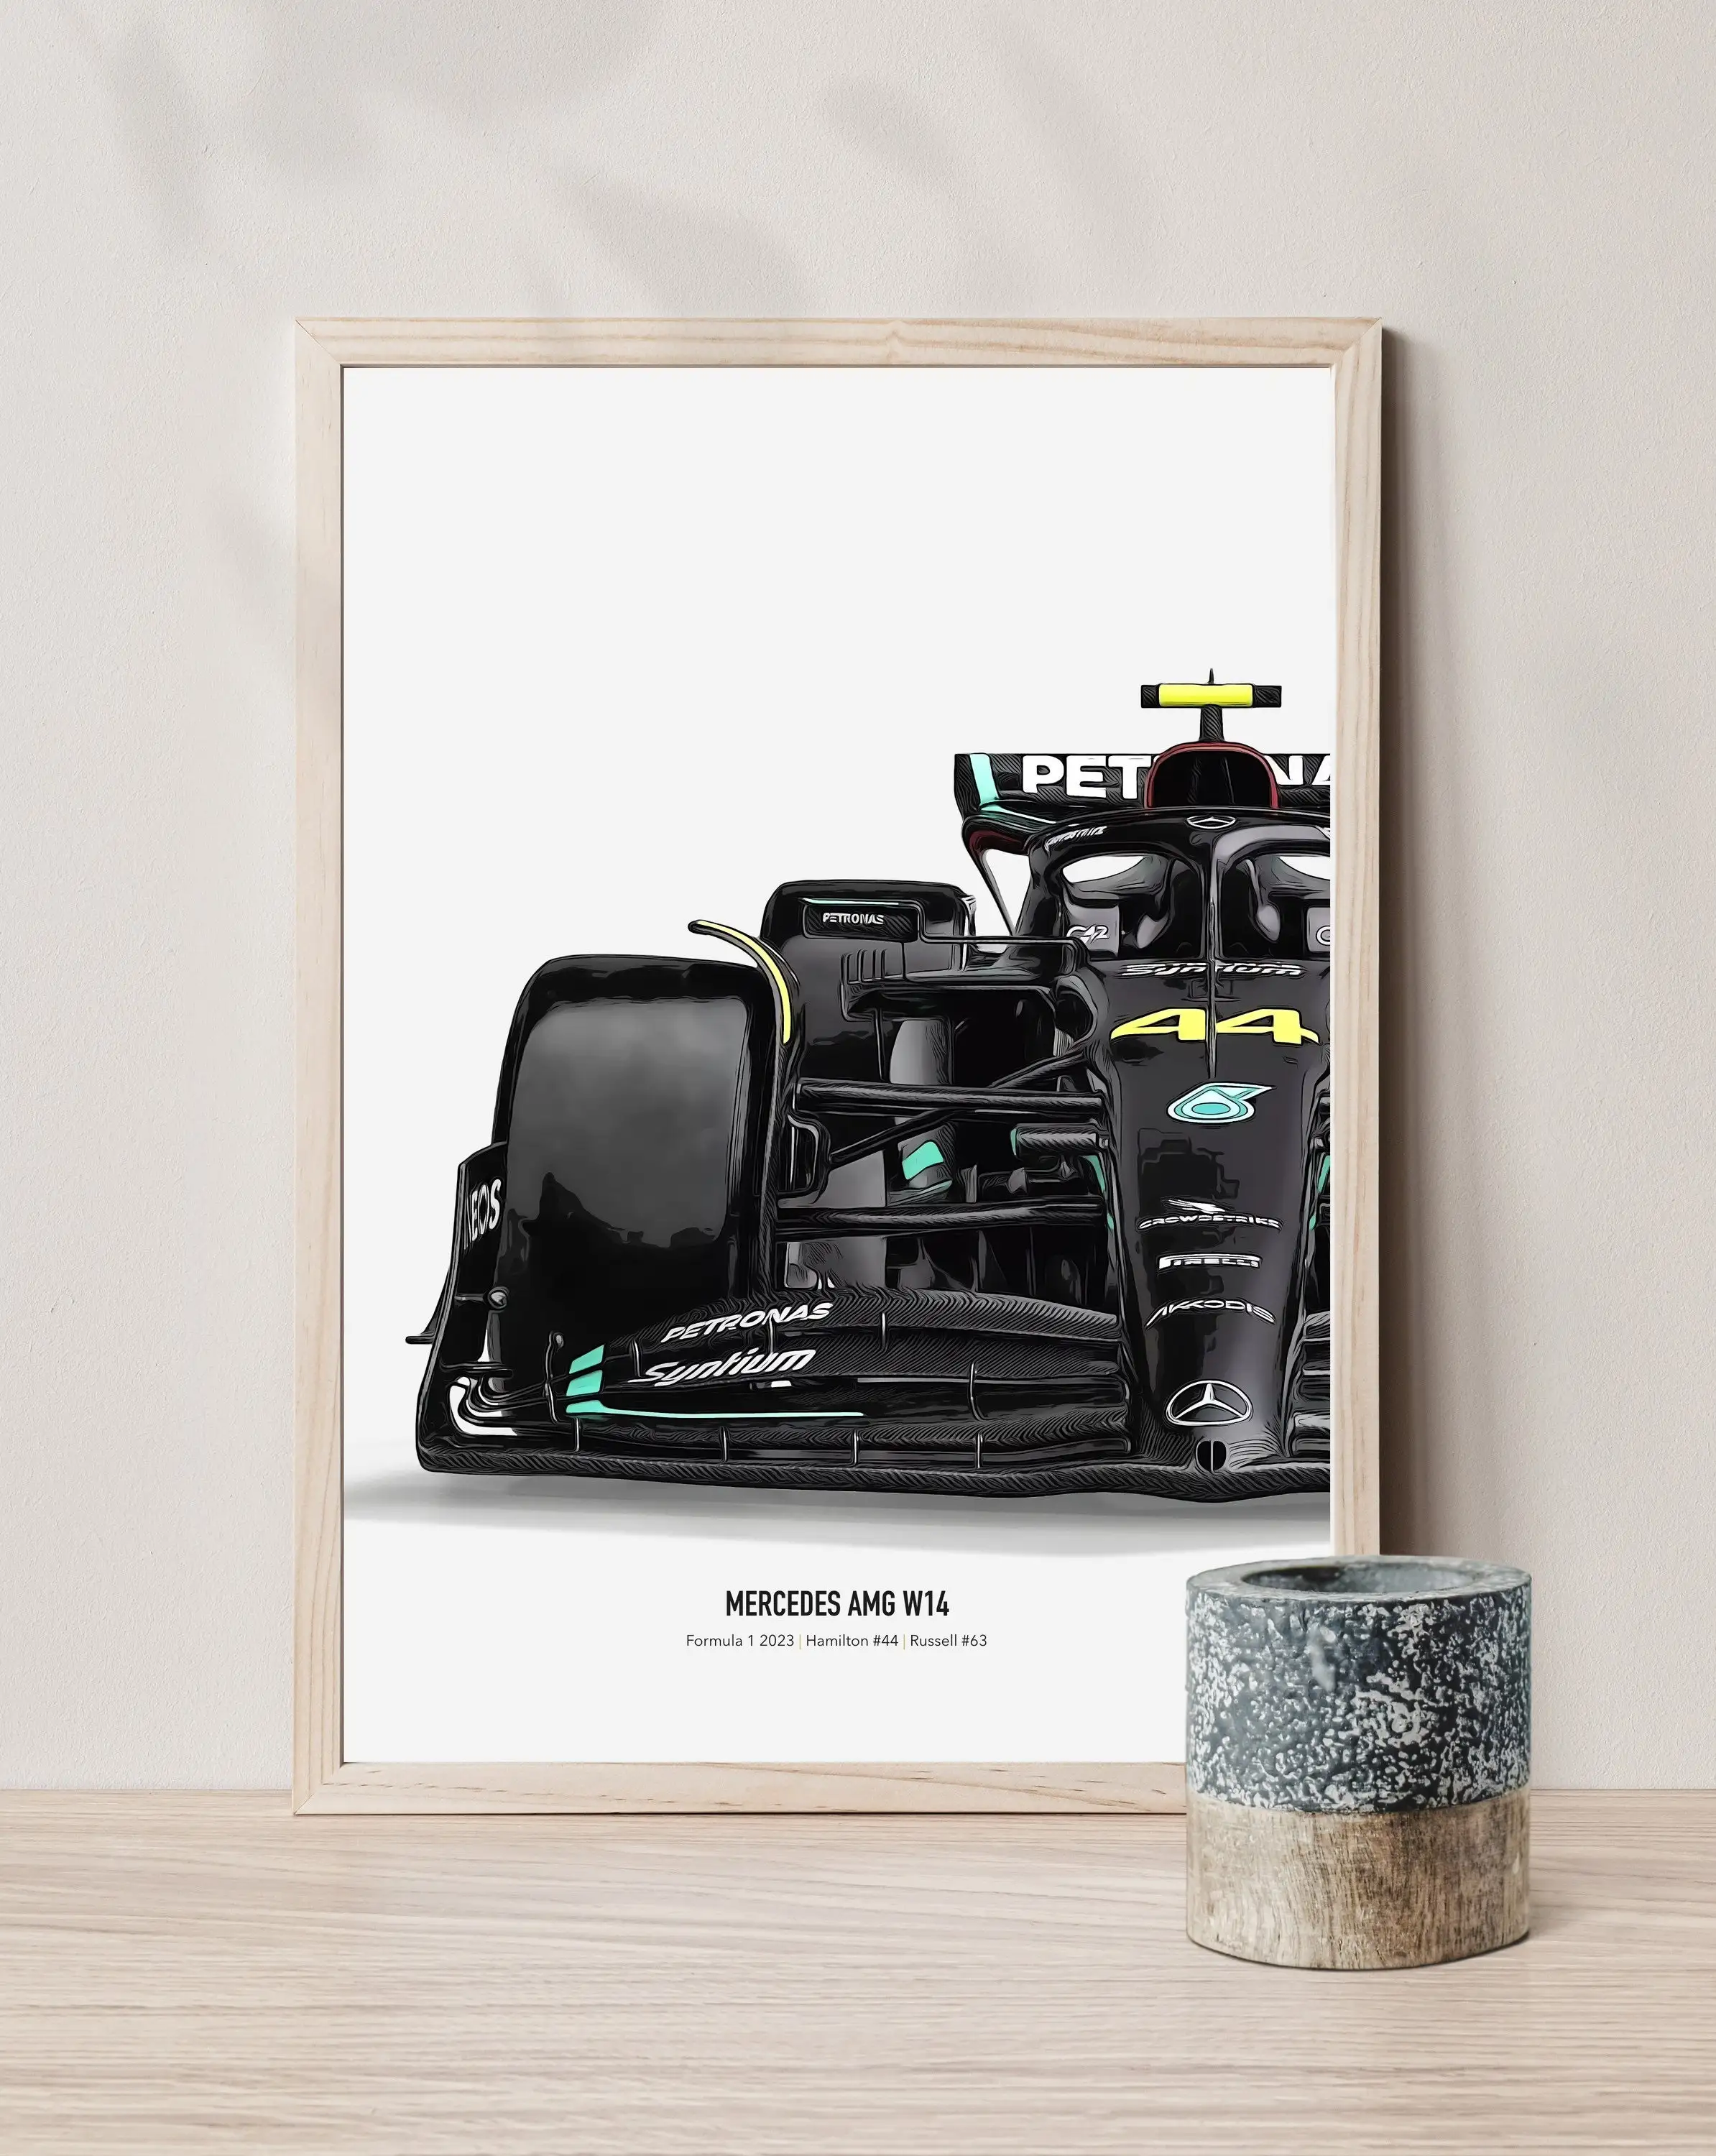 Lewis Hamilton Poster 18 X 24 - Lewis Hamilton Print